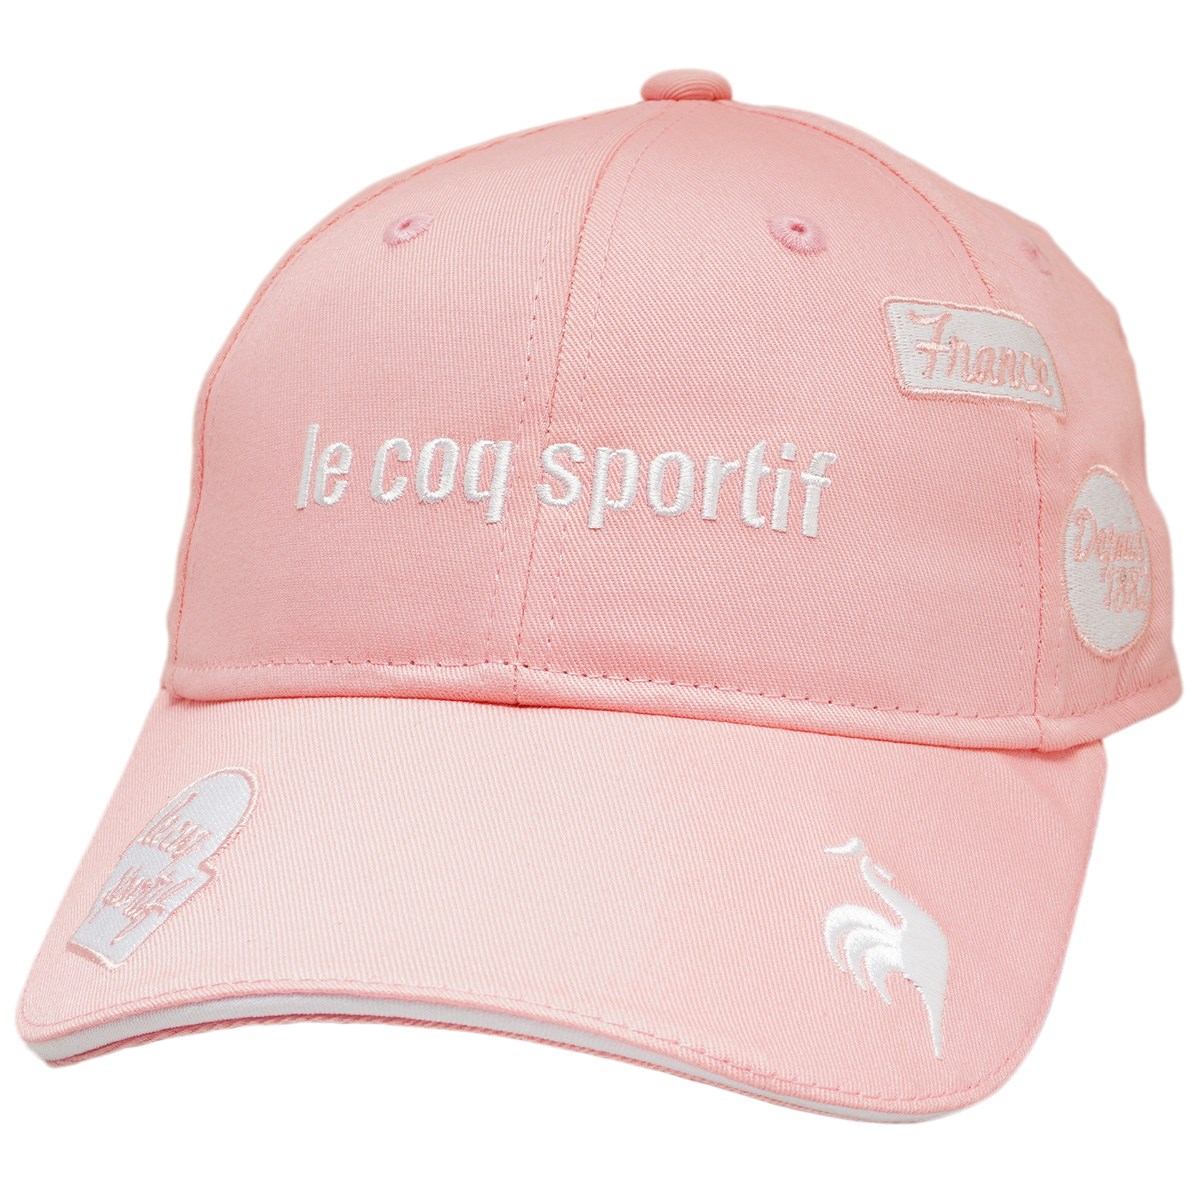 [2022年モデル] ルコックゴルフ Le coq sportif GOLF キャップ ピンク 00 レディース ゴルフウェア 帽子